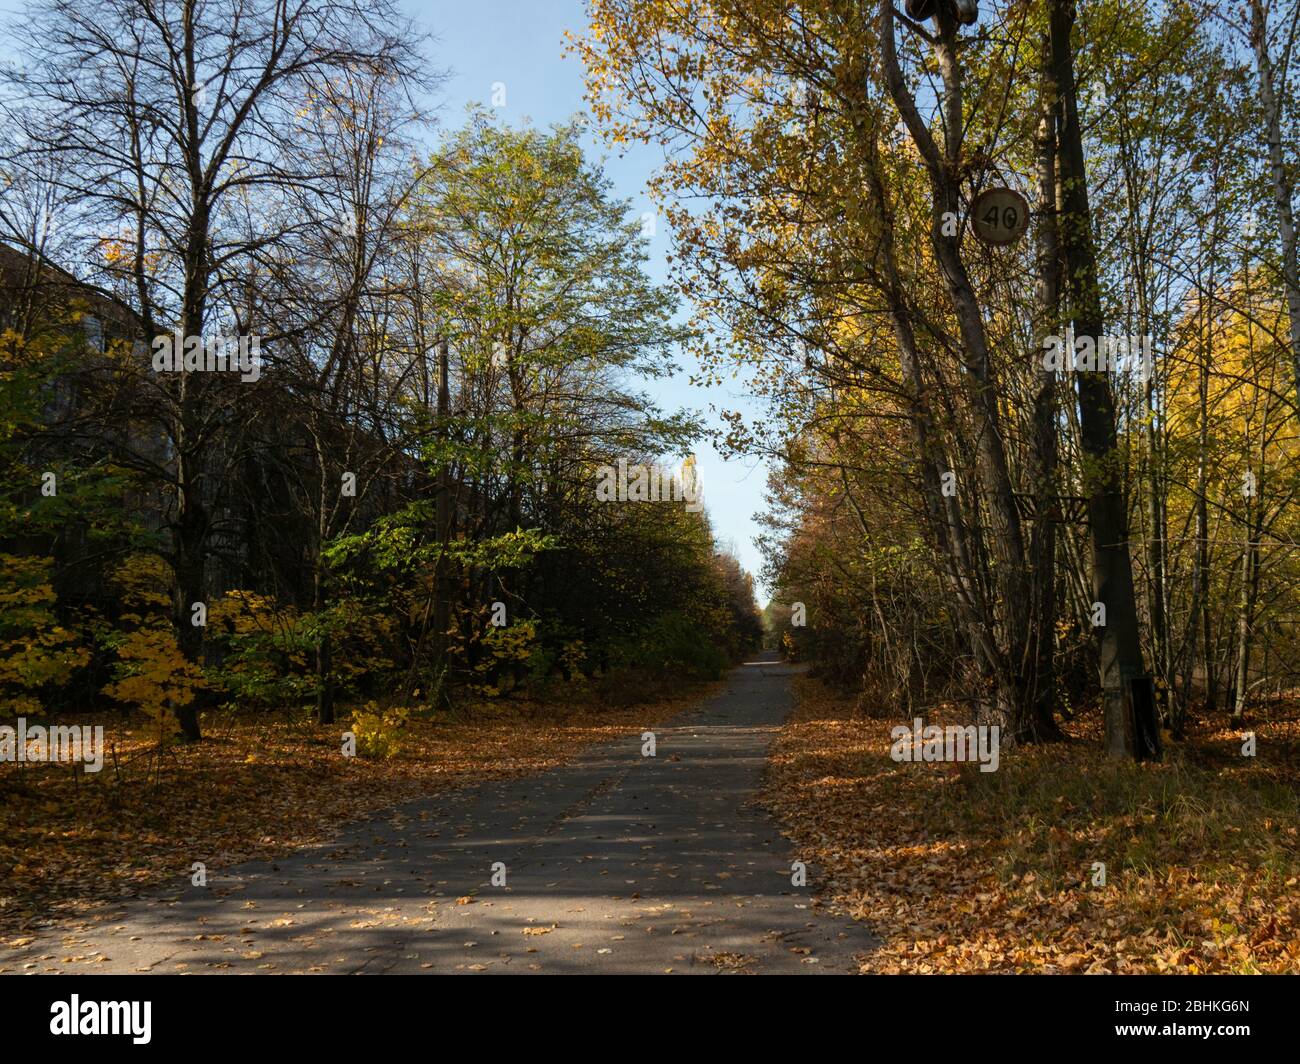 Verlassene Wohngegend und Gebäude. Frühere Straßen und Gassen werden von Bäumen und Büschen eingenommen. Geisterstadt Pripyat, Tschernobyl-Ausschlusszone. Ukr Stockfoto